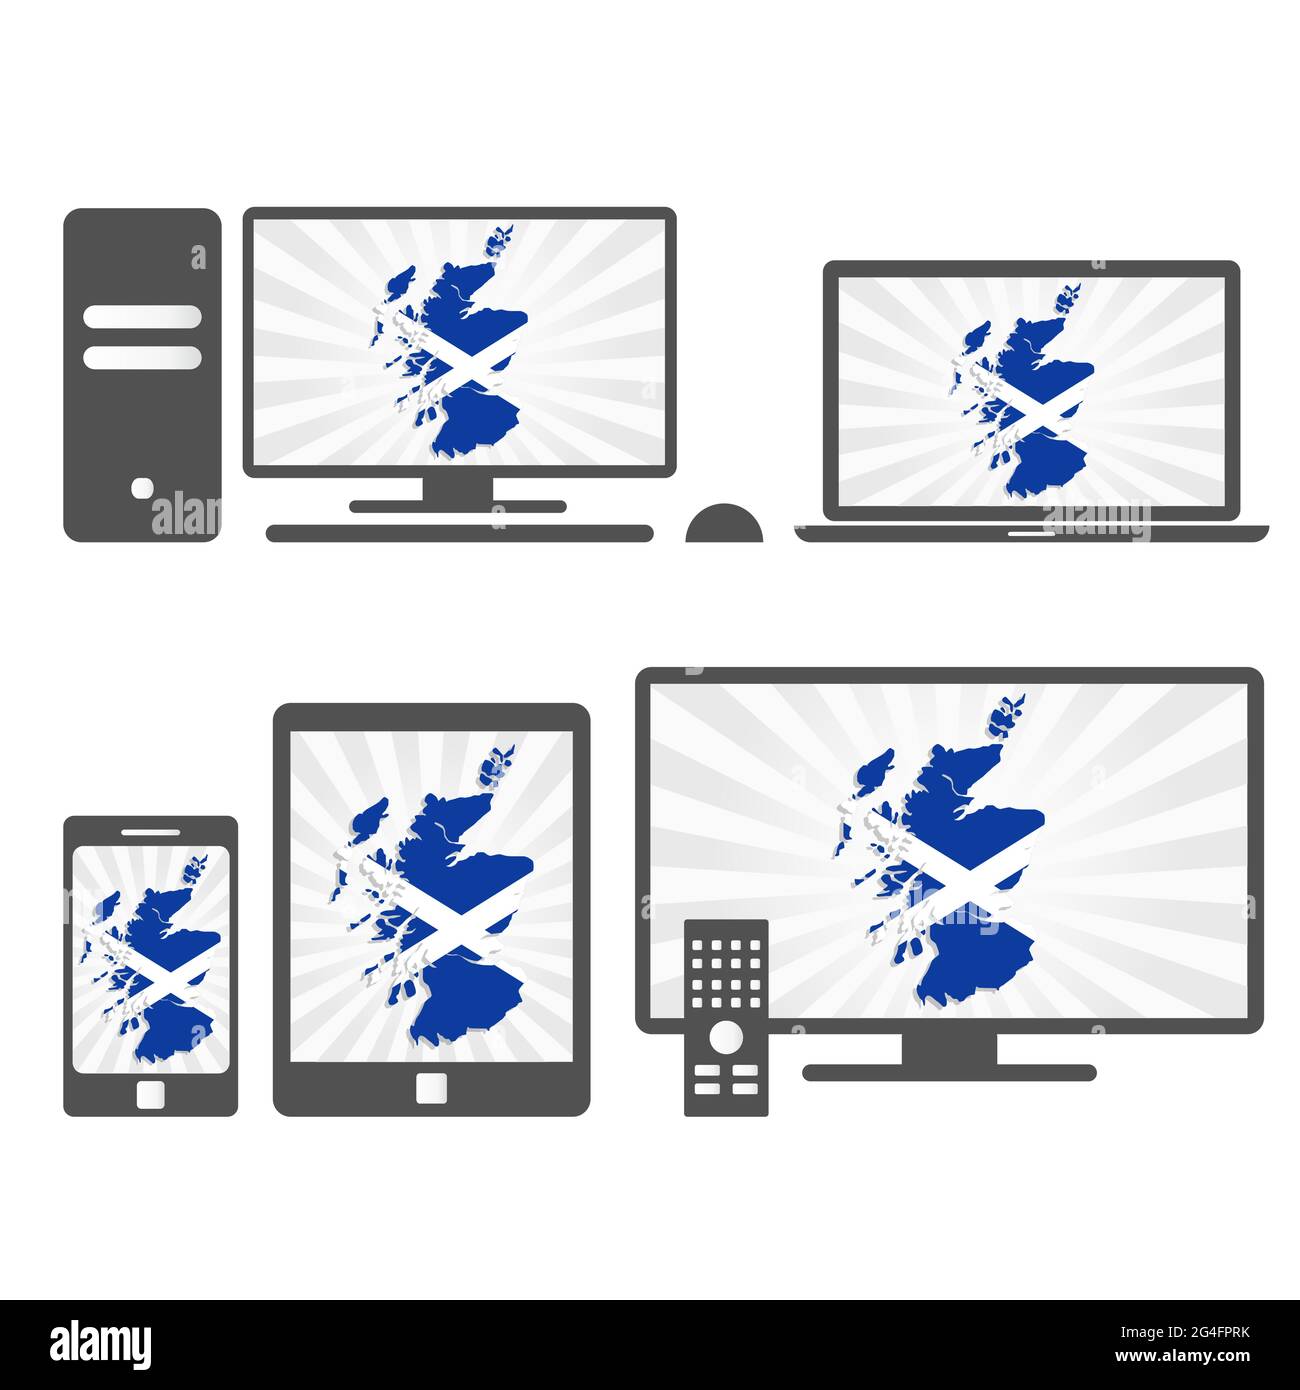 Viele Gerätemedien (Tablet, pc, Mobiltelefon, Laptop, Smart tv) mit der Karte und Flagge Schottlands. Stock Vektor